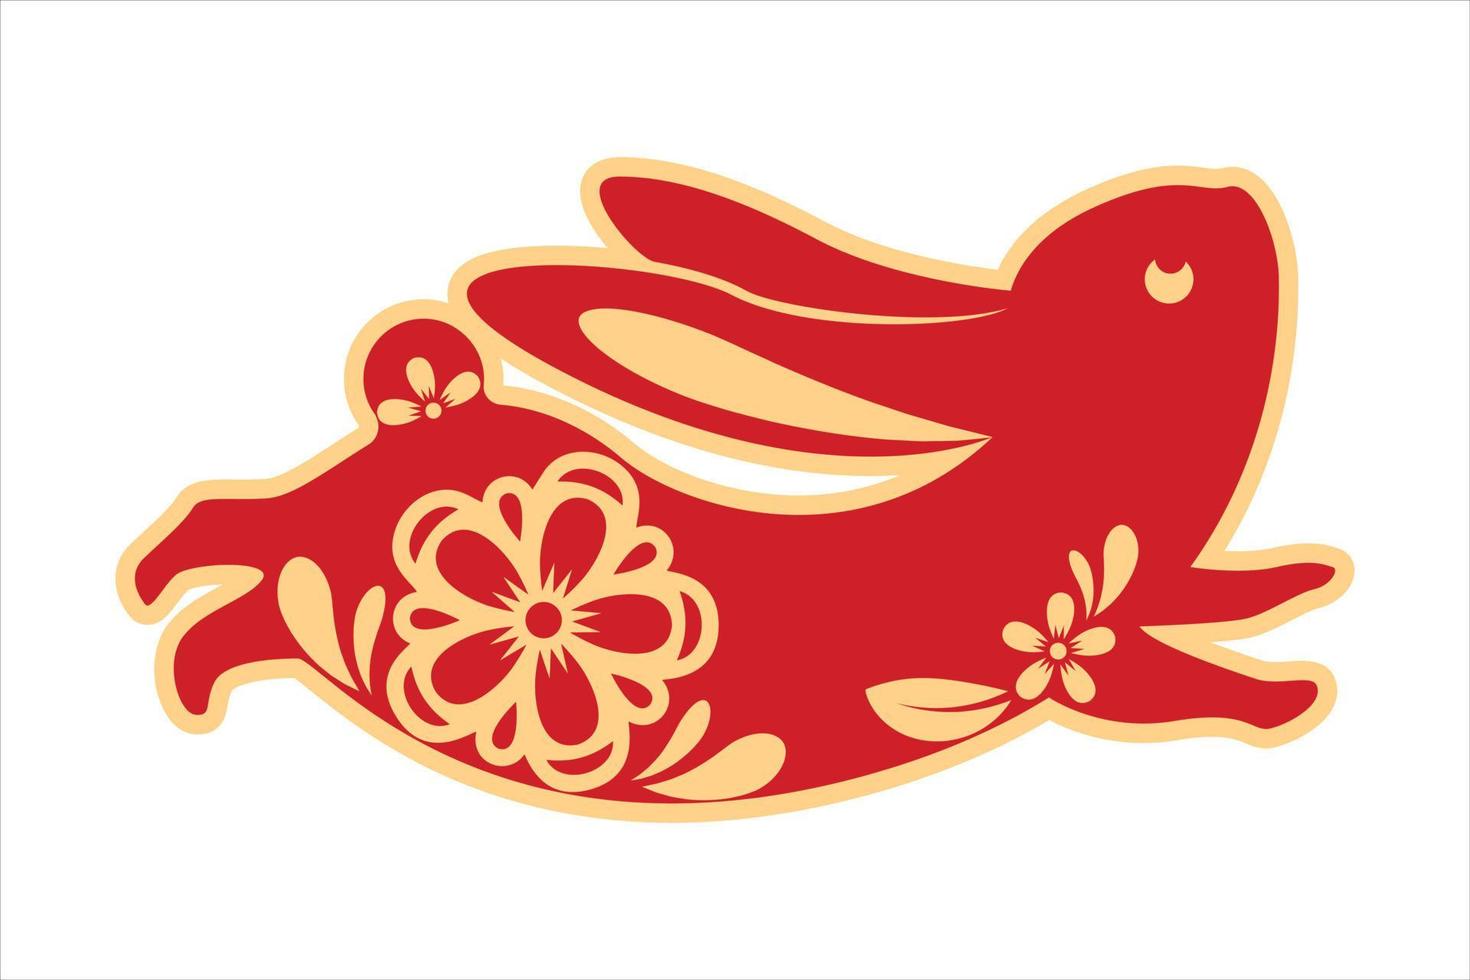 año del conejo 2023, año nuevo chino concepto del zodiaco chino, conejo rojo corriendo patrón de corte de papel vector